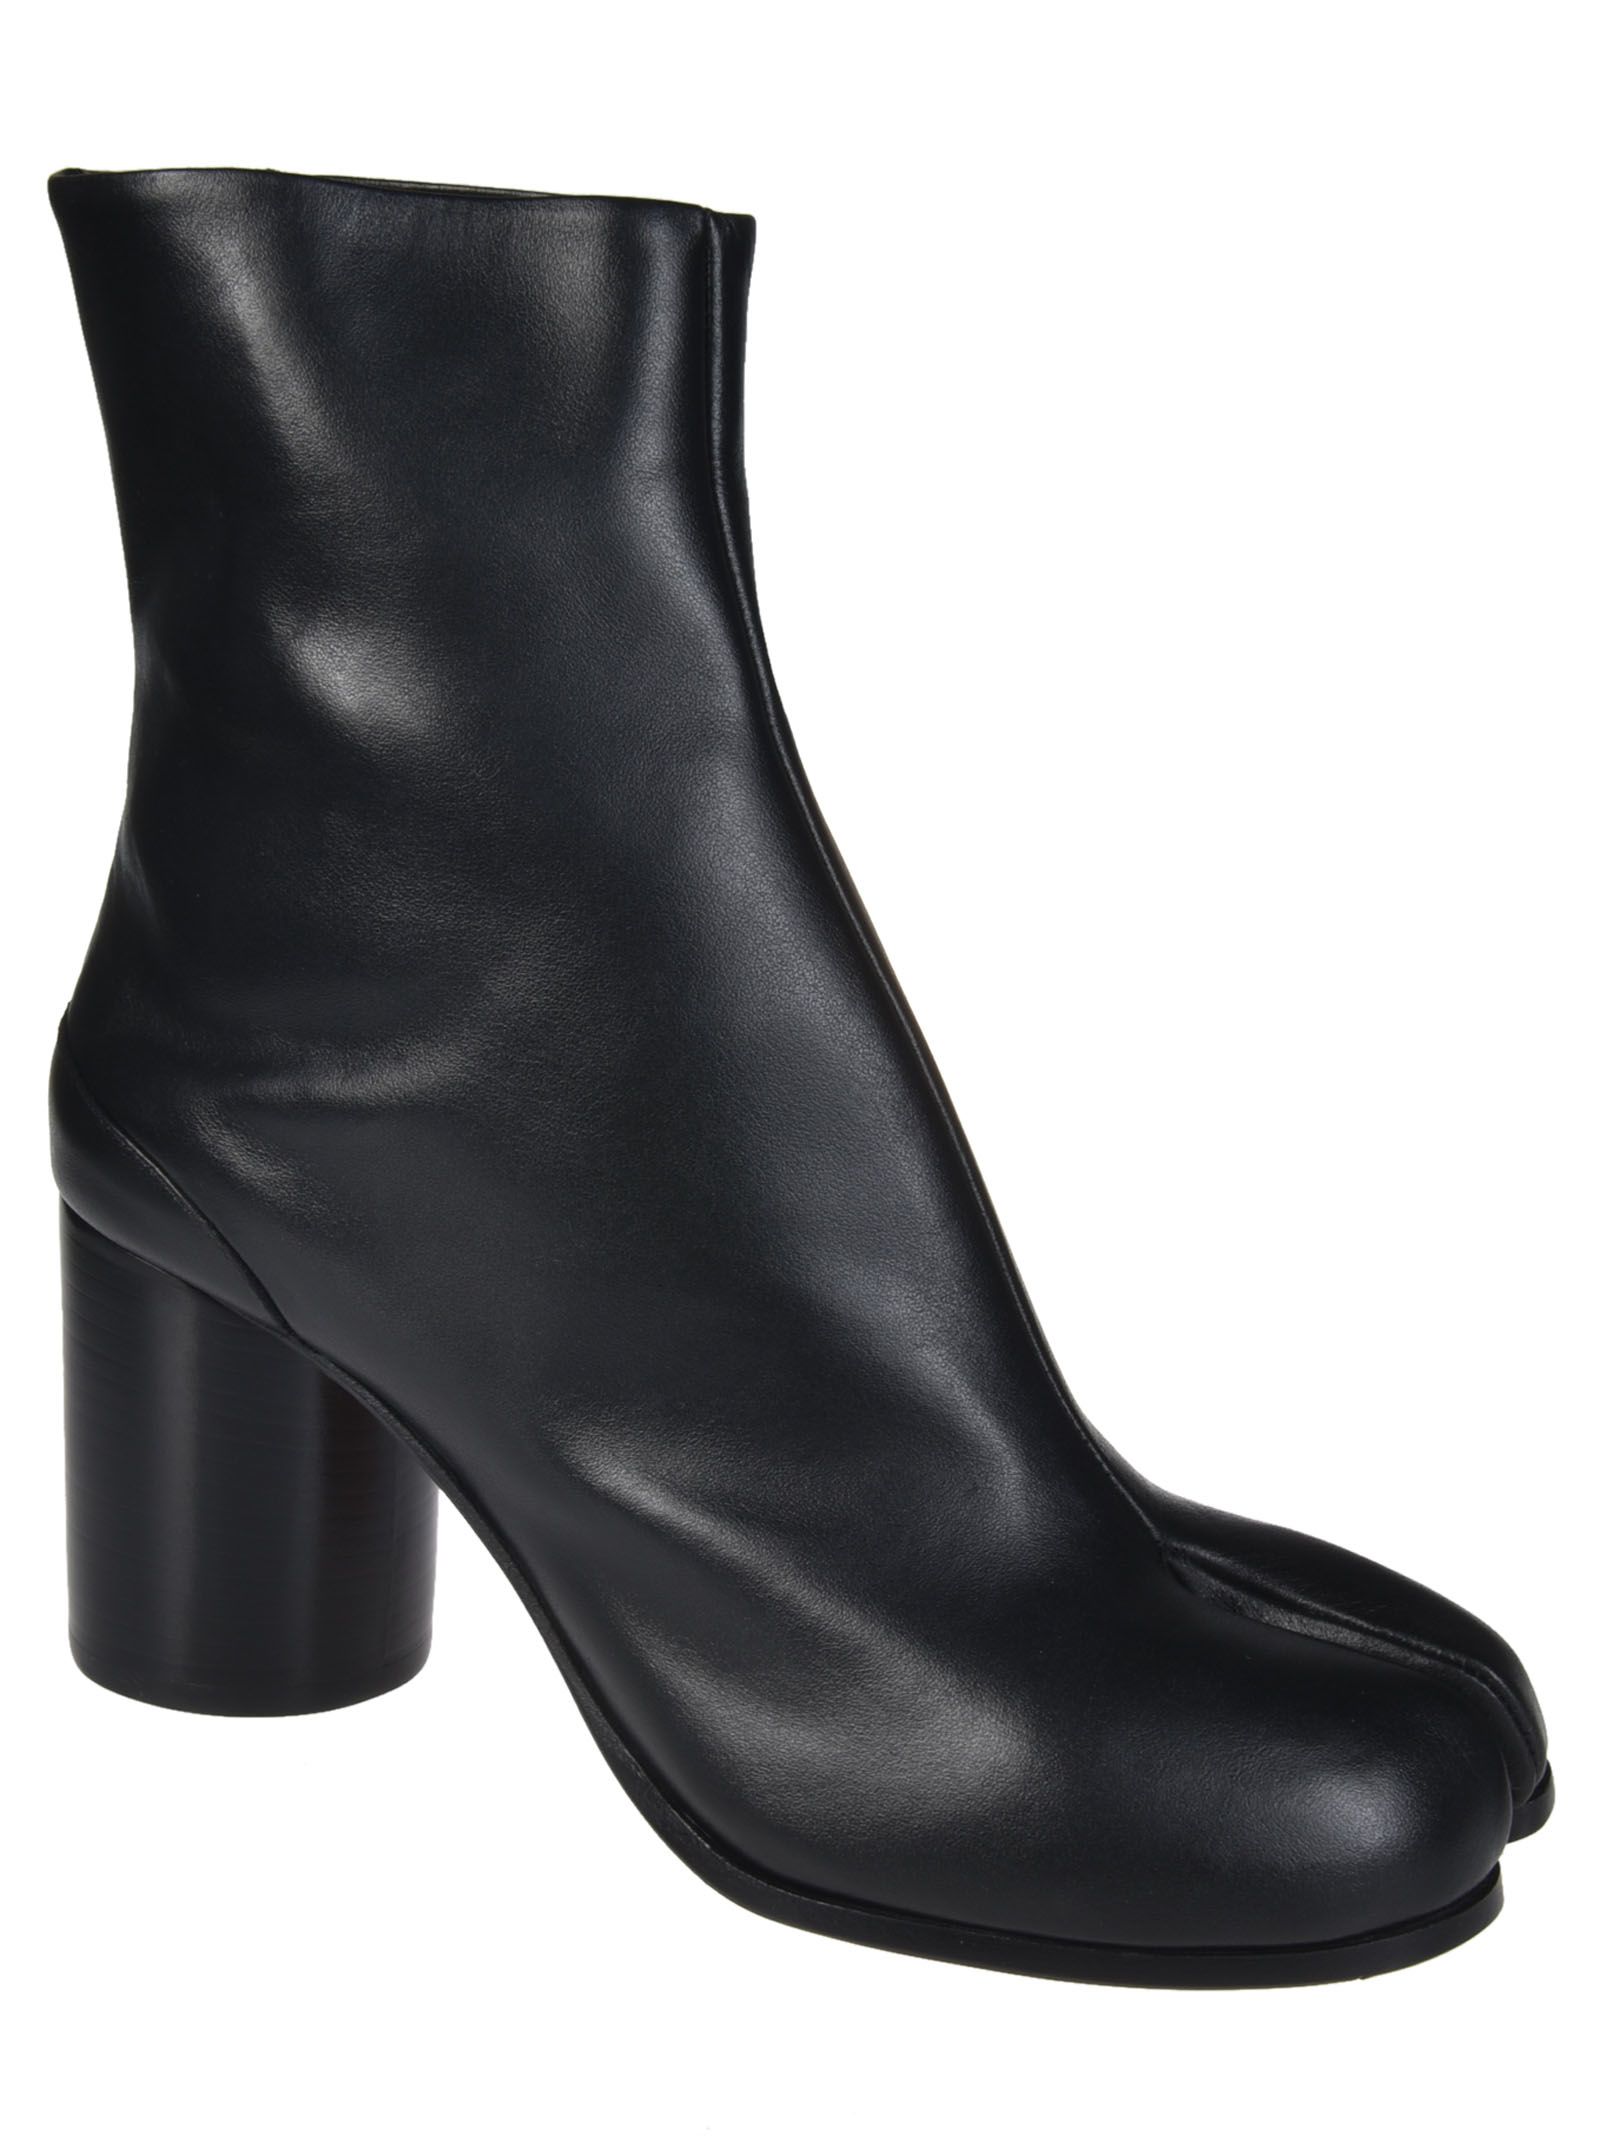 Maison Margiela - Maison Margiela Classic Ankle Boots - Black, Women's